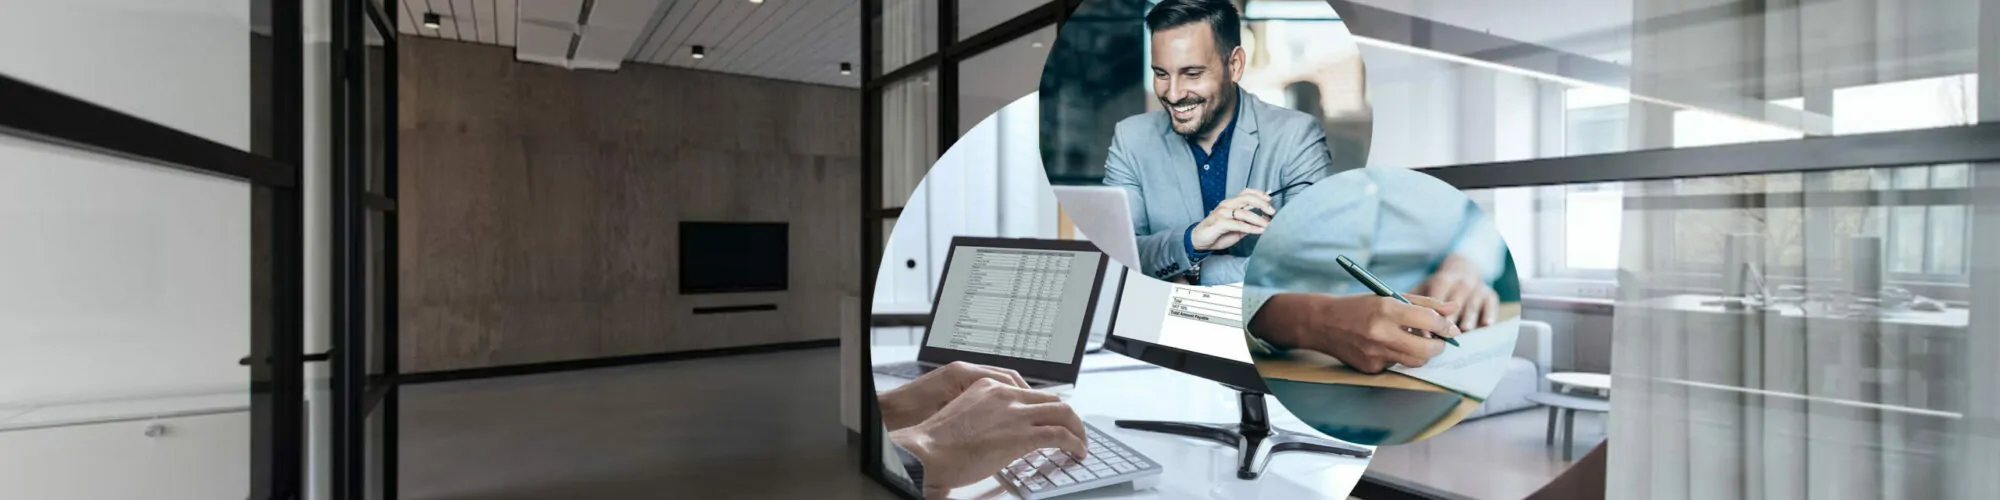 Bild von einem Mann, der auf einen Bildschirm schaut, daneben tippende Hände und eine Person mit Stift in der Hand | UID-Nummern automatisiert in SAP prüfen